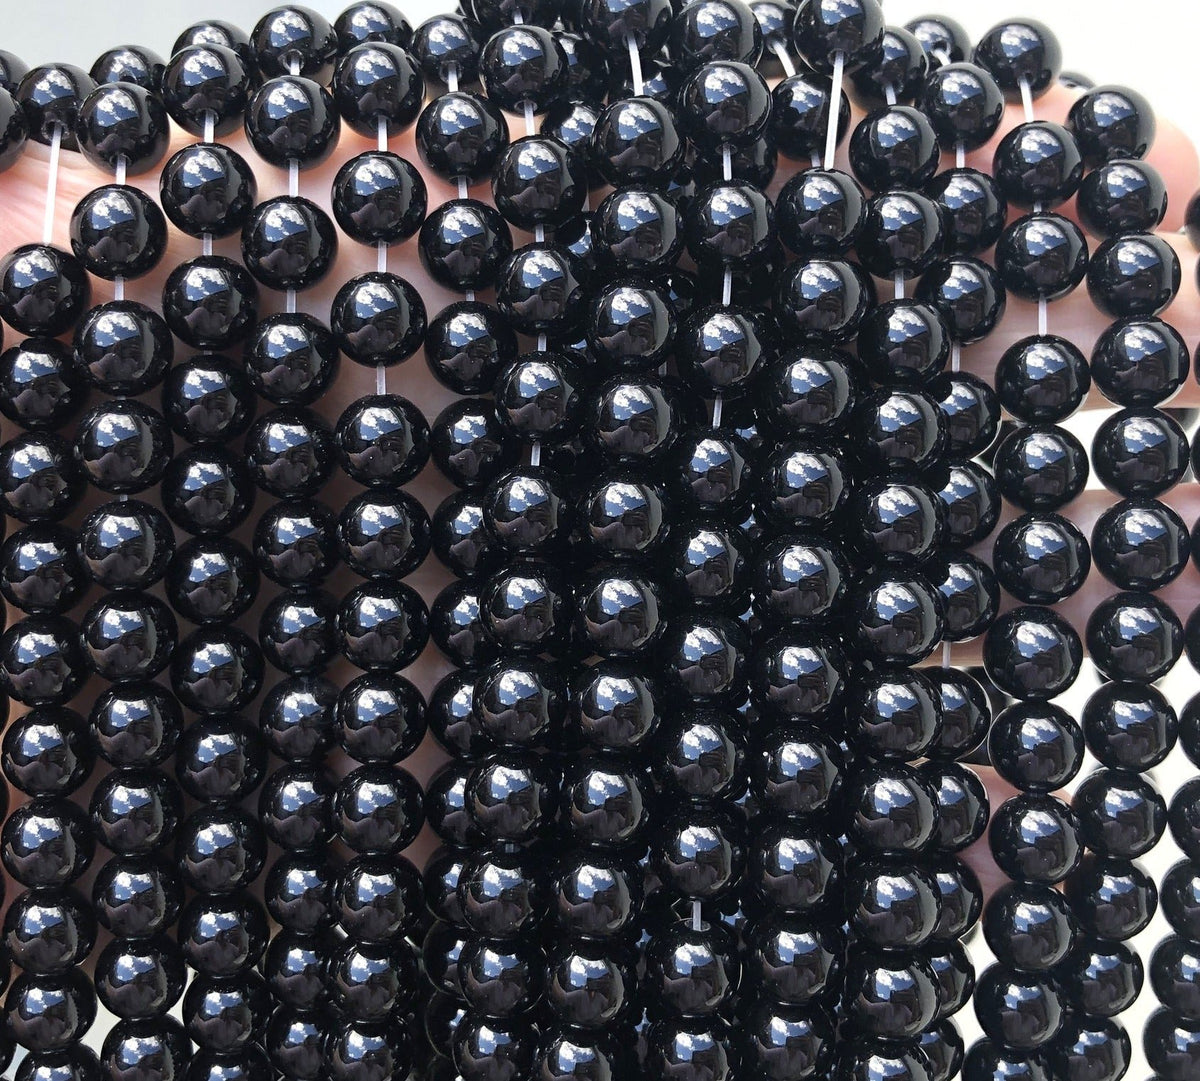 Black Onyx 6mm round polished gemstone beads 15.5" strand - Oz Beads 